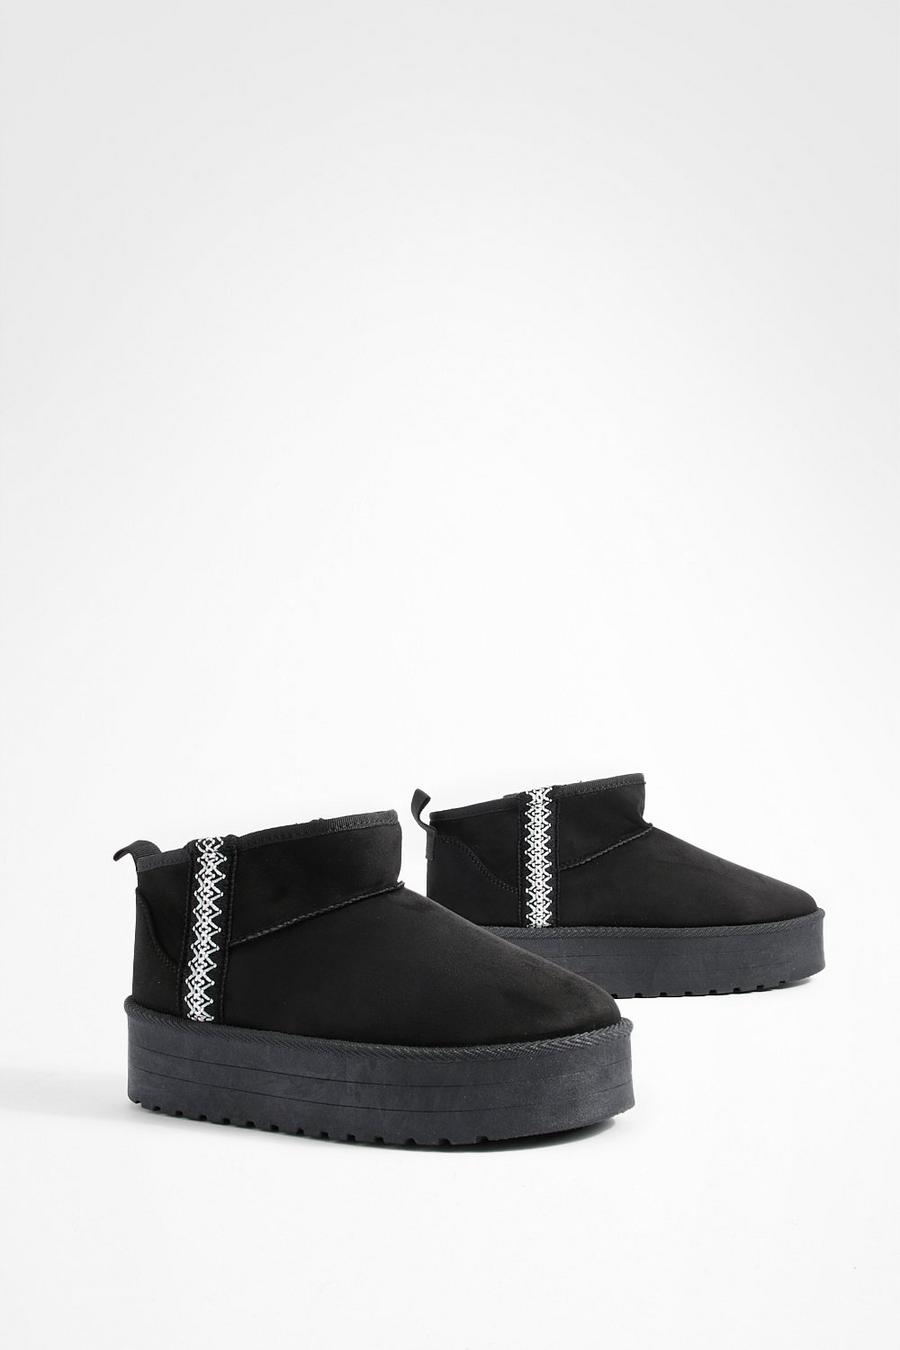 Botas cómodas con plataforma y bordado, Black negro